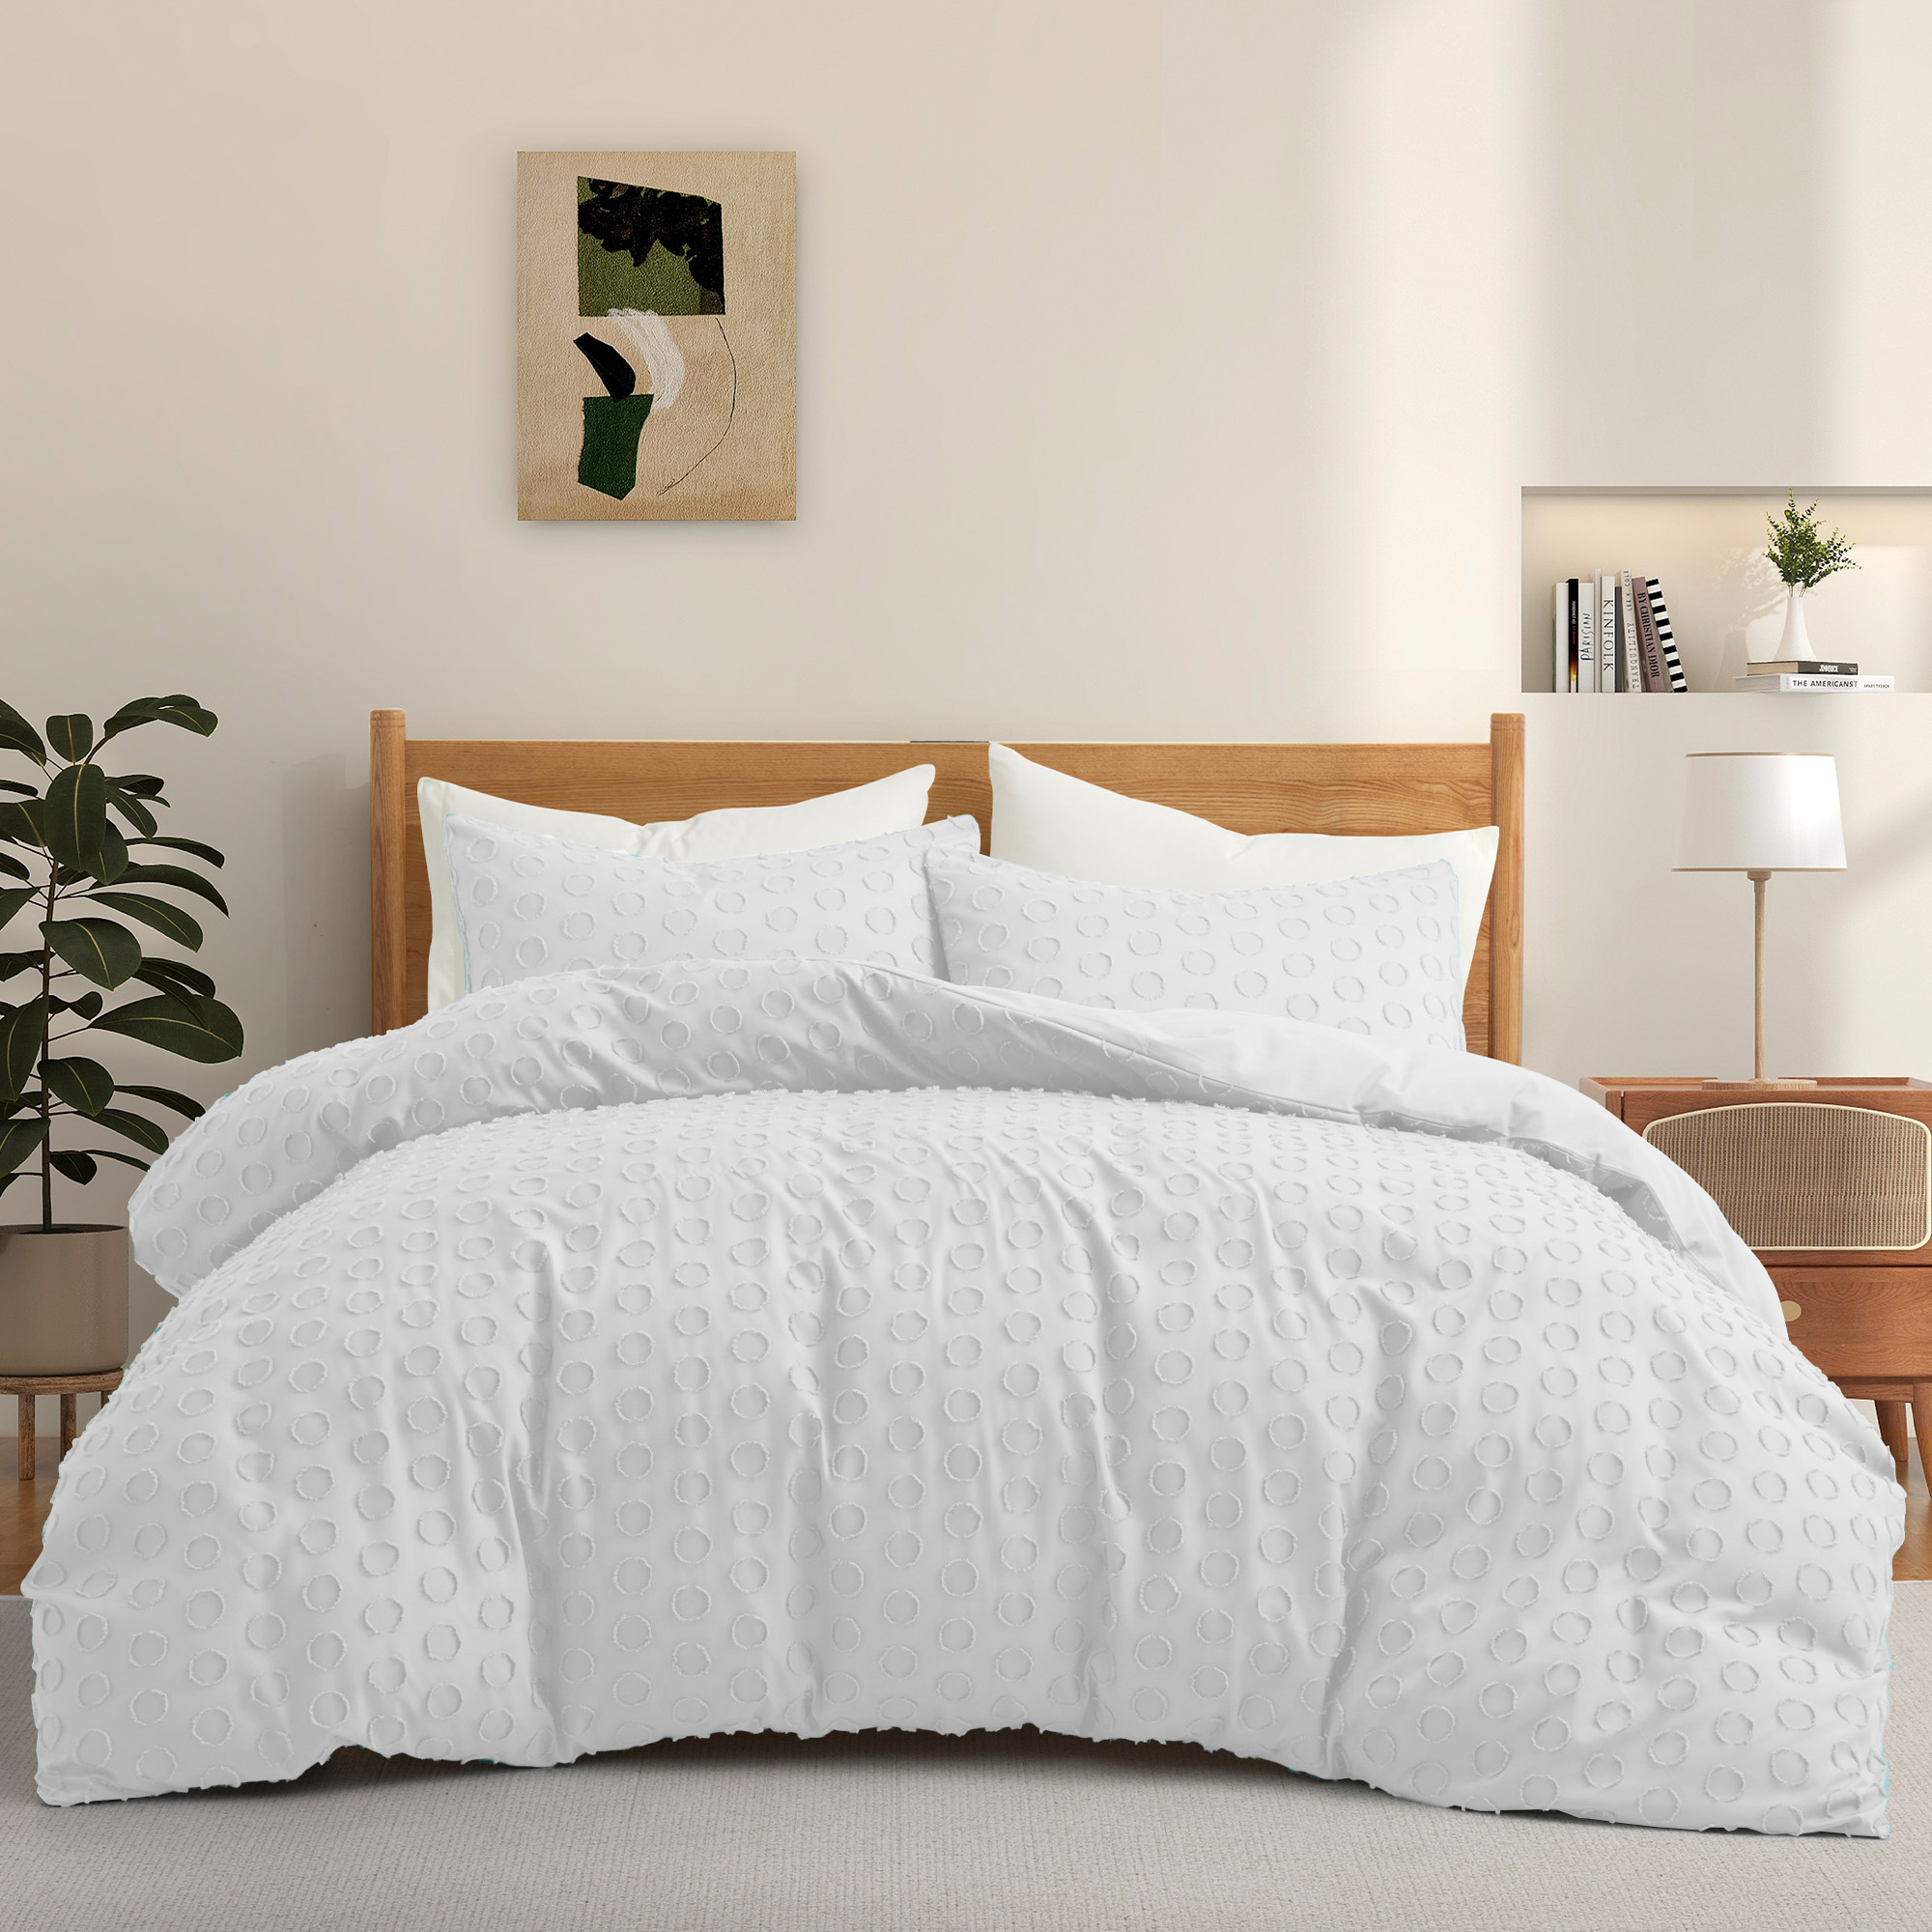 Luxury Bedding Soft Microfiber Duvet Cover And Sham Set - White, King